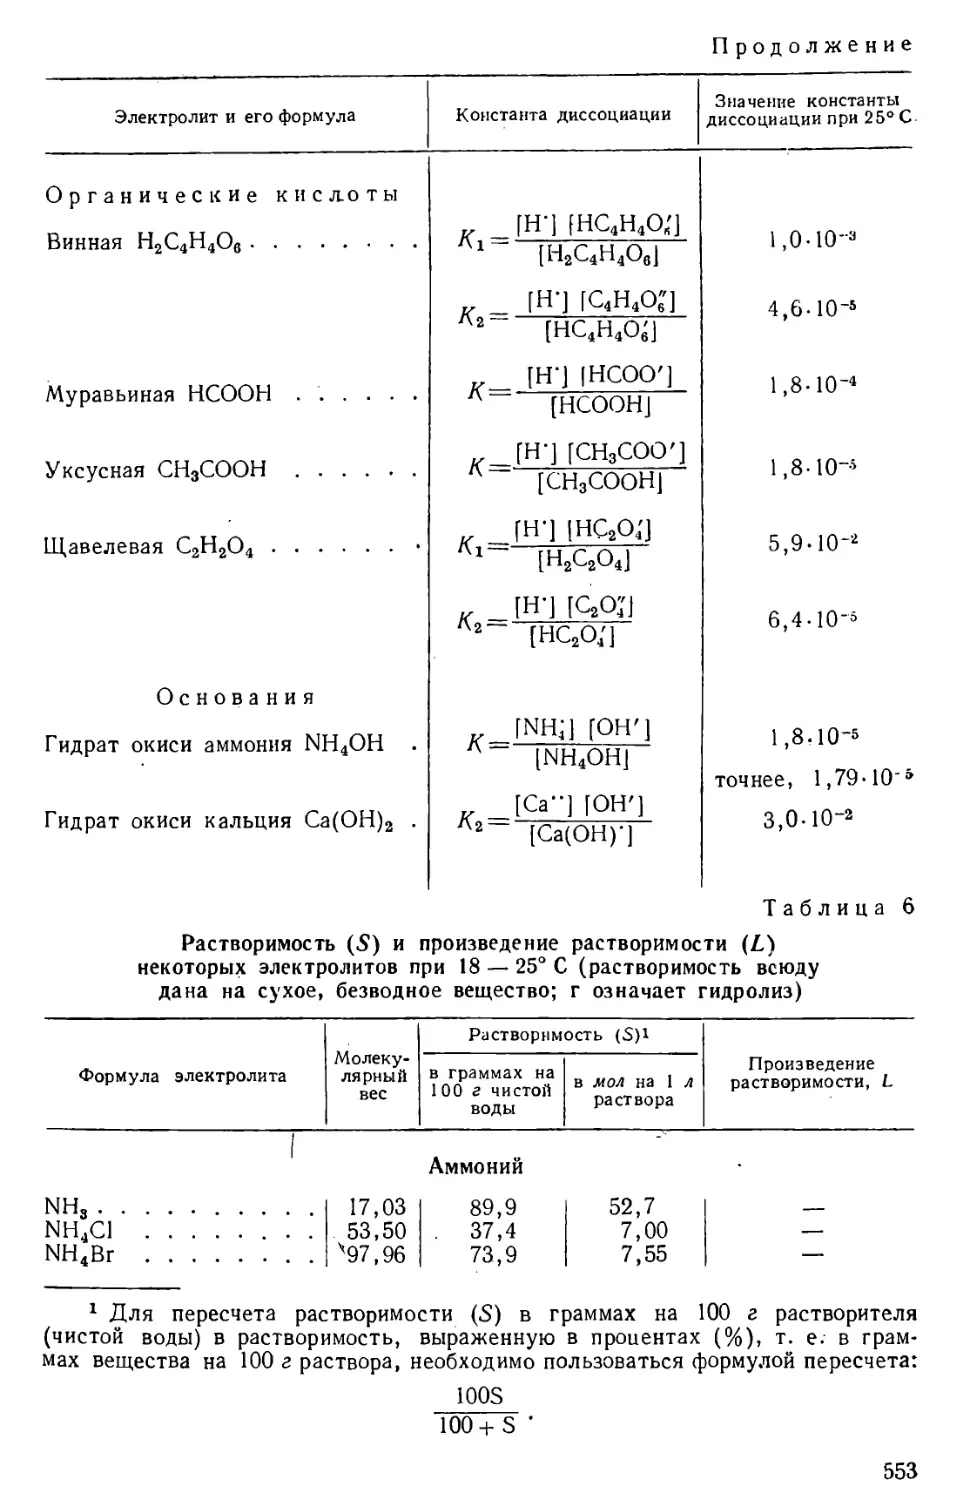 Таблица 6. Растворимость и произведение растворимости некоторых электроолитов при температуре 18—25° C